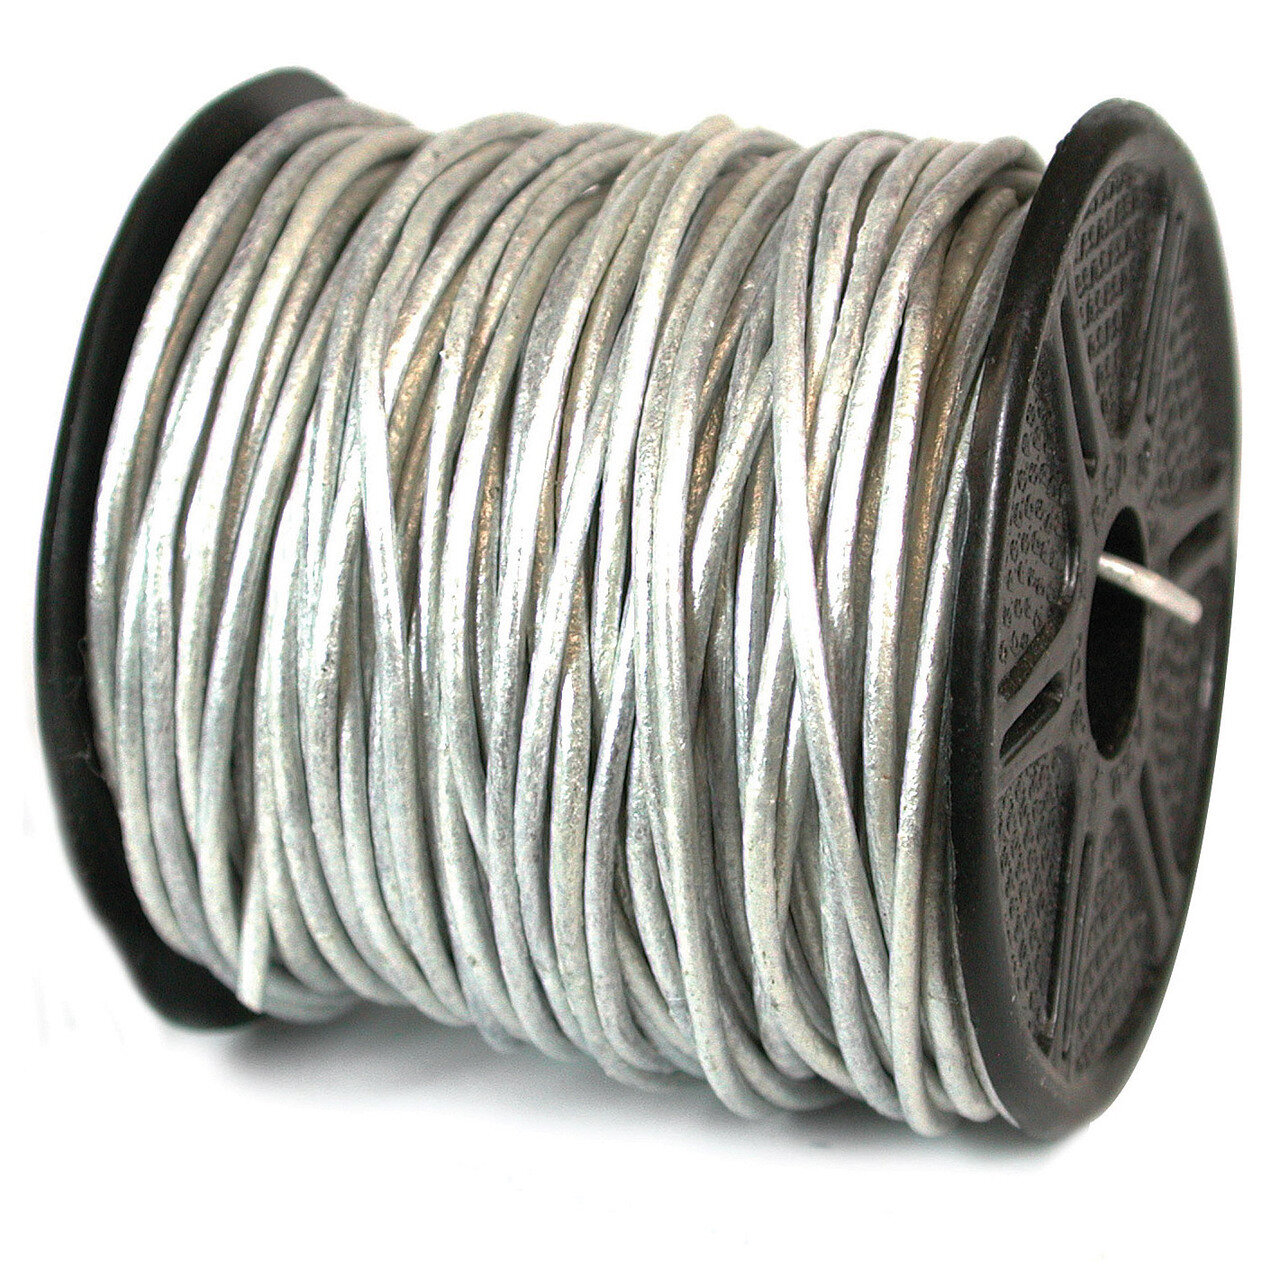 1300 1 mm. 25 Yard Metallic Silver Leather Cord CRD845/1.0-25